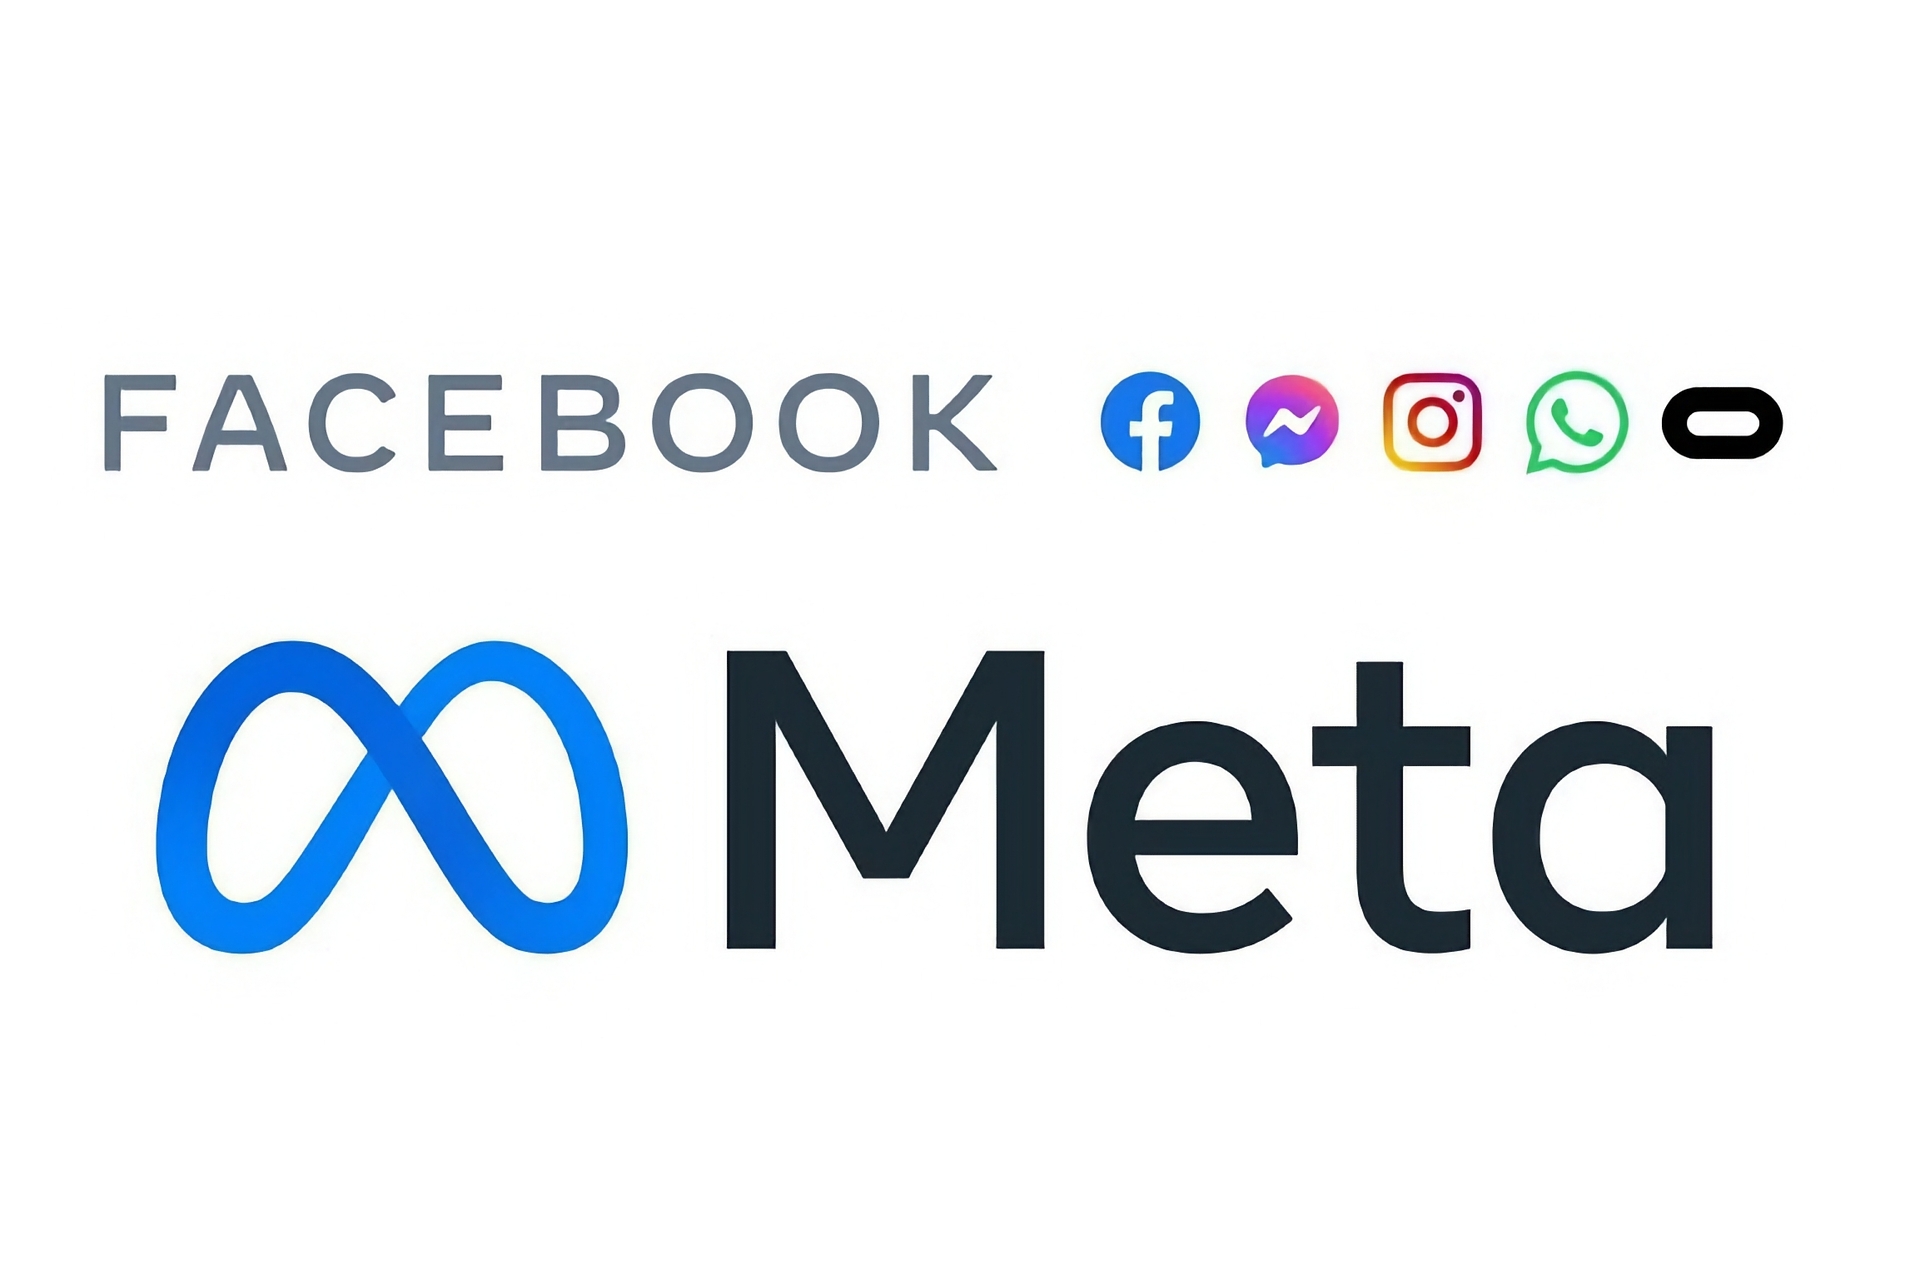 Facebook: oficjalne logo firmy Meta, która jest właścicielem Facebooka i innych głównych mediów społecznościowych lub usług cyfrowych na całym świecie, takich jak Messenger, Instagram, WhatsApp i Oculus